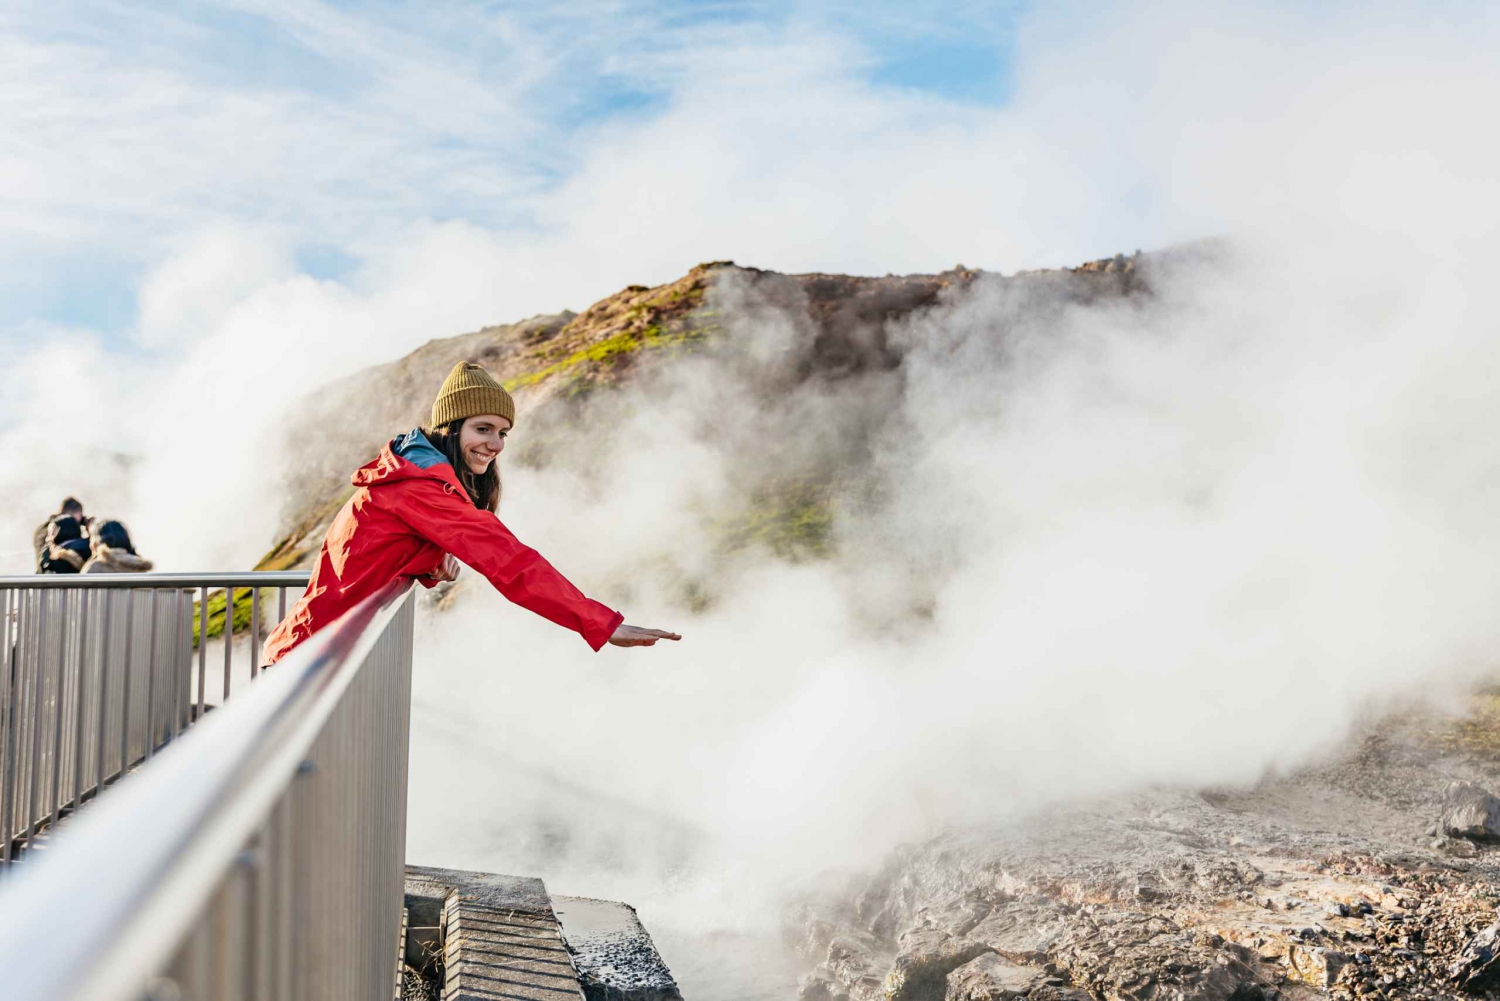 Reykjavik: Silver Circle, Canyon Baths, and Waterfalls Tour